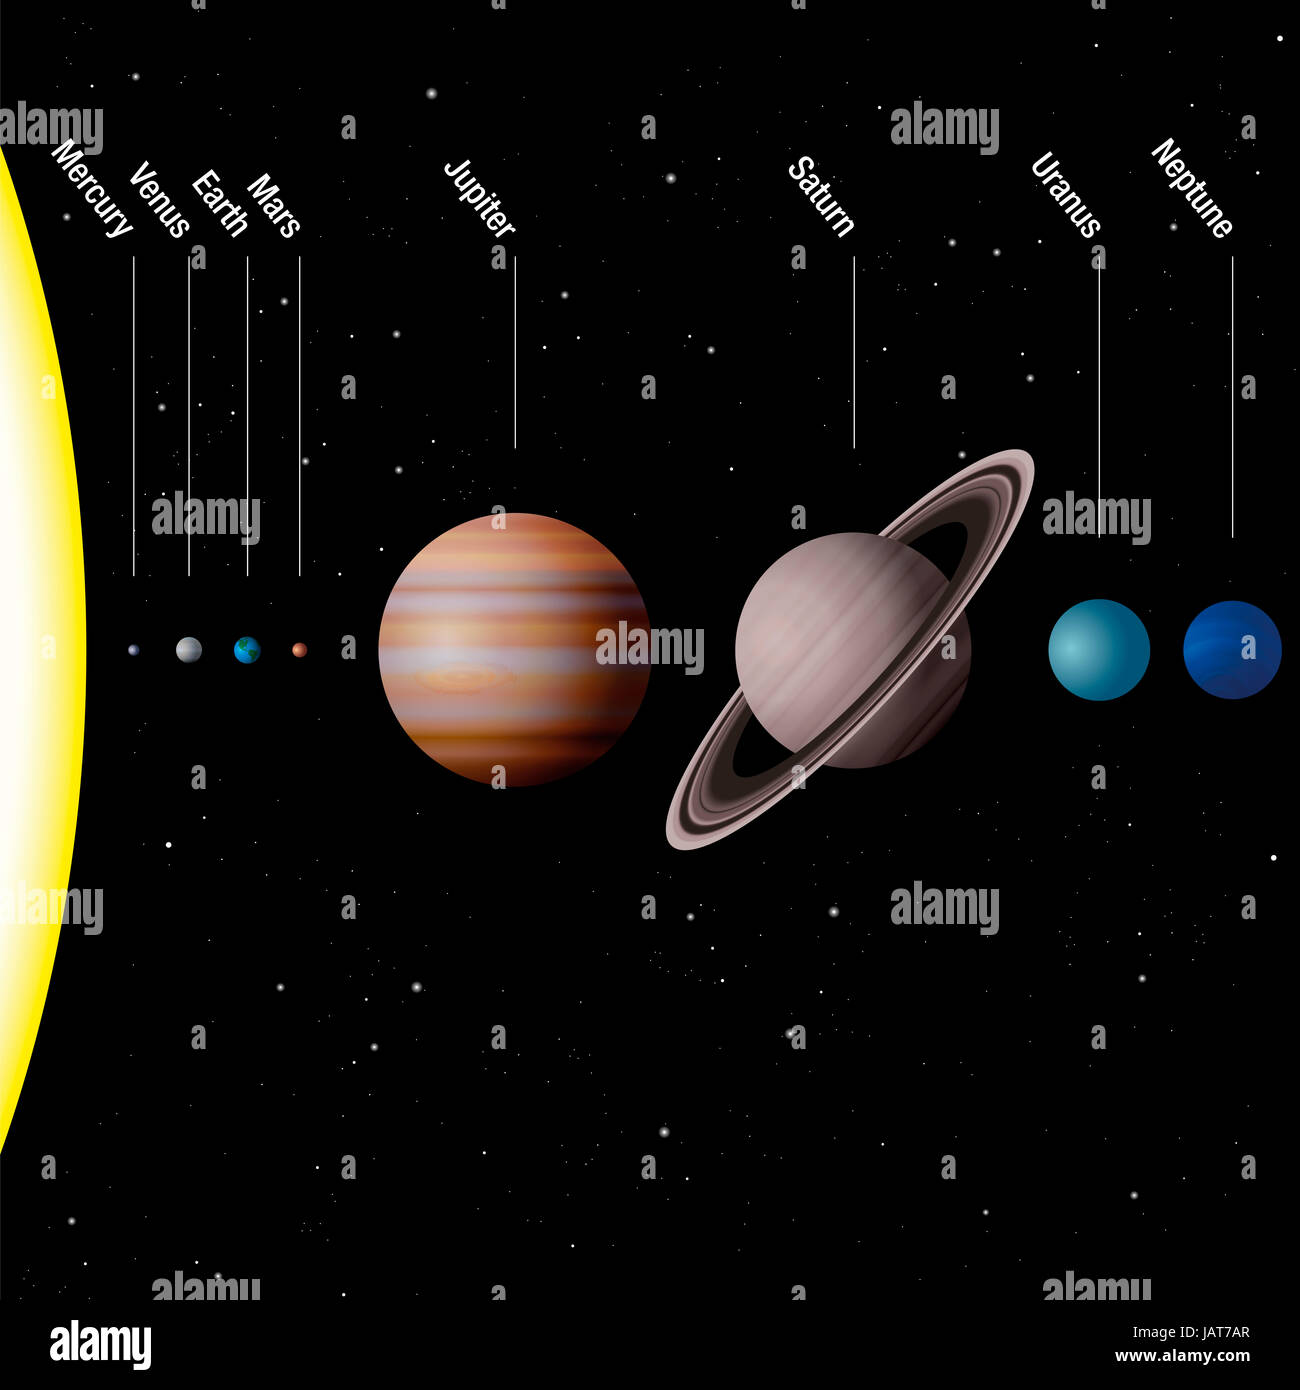 Pianeti del nostro sistema solare - vero in scala - Sun e otto pianeti Mercurio, Venere, Terra e Marte, Giove, Saturno, Urano, Nettuno. Foto Stock